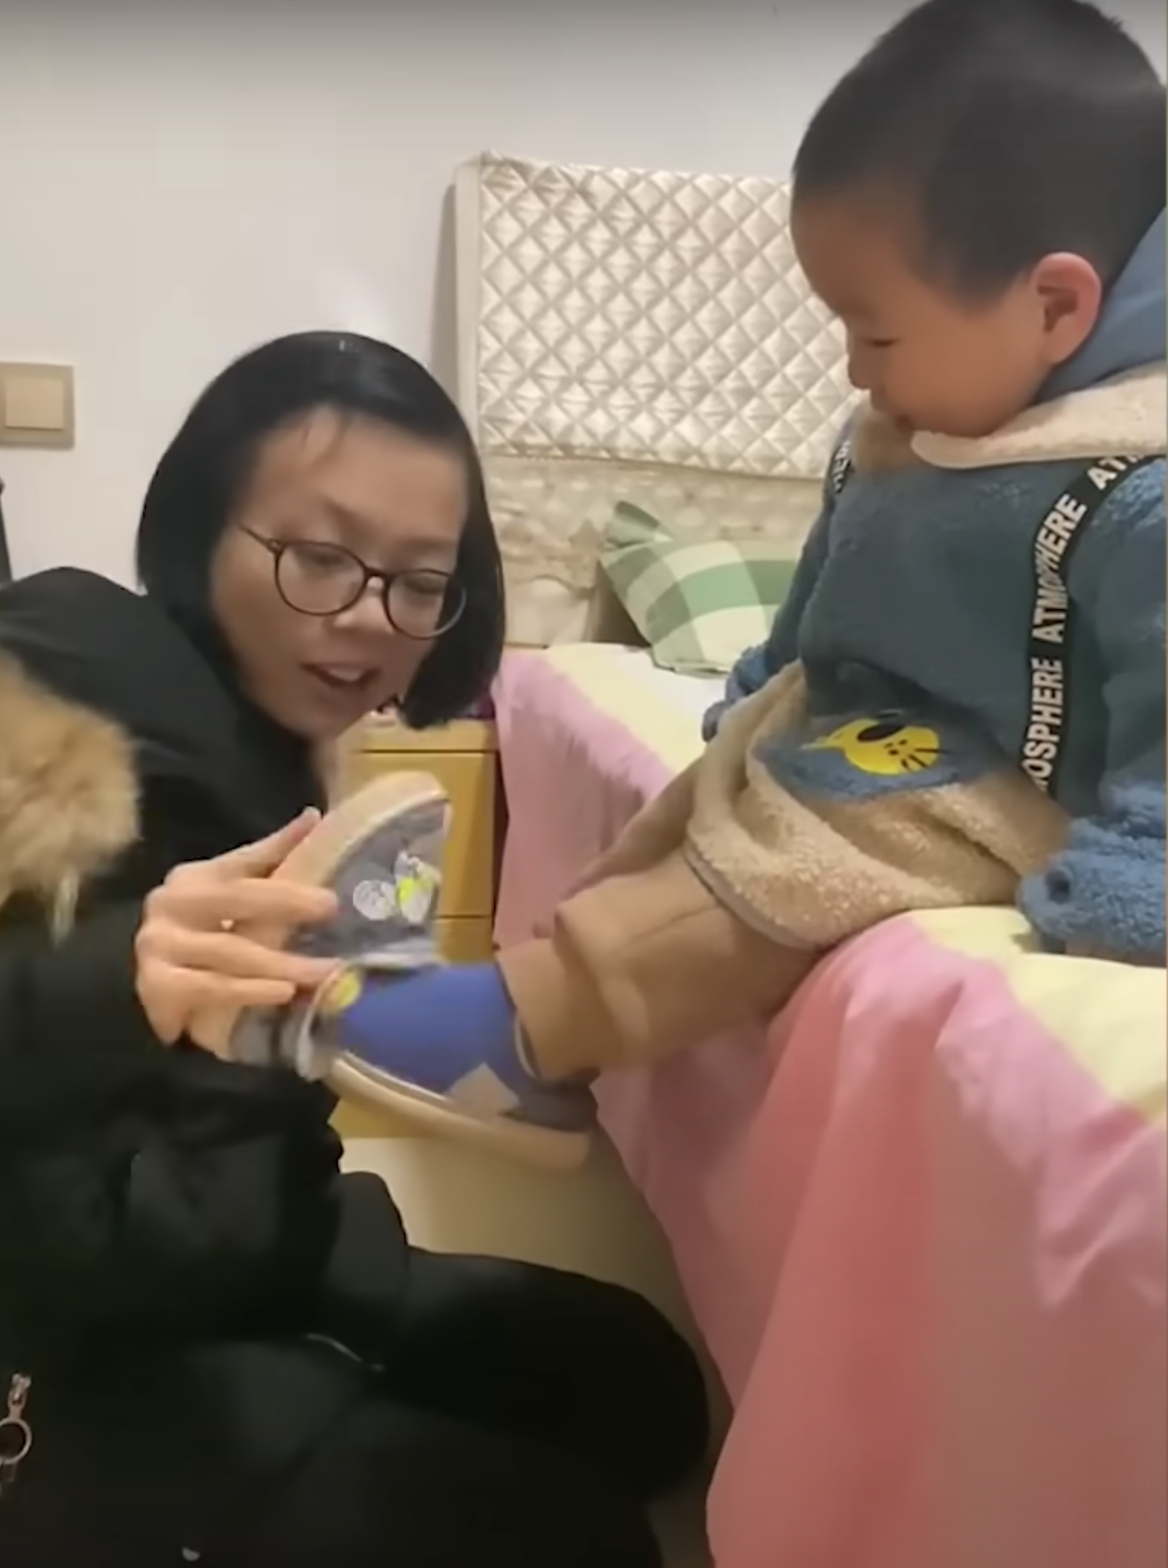 Wang fait de son mieux pour s'occuper de son fils. | Source : Youtube.com/South China Morning Post